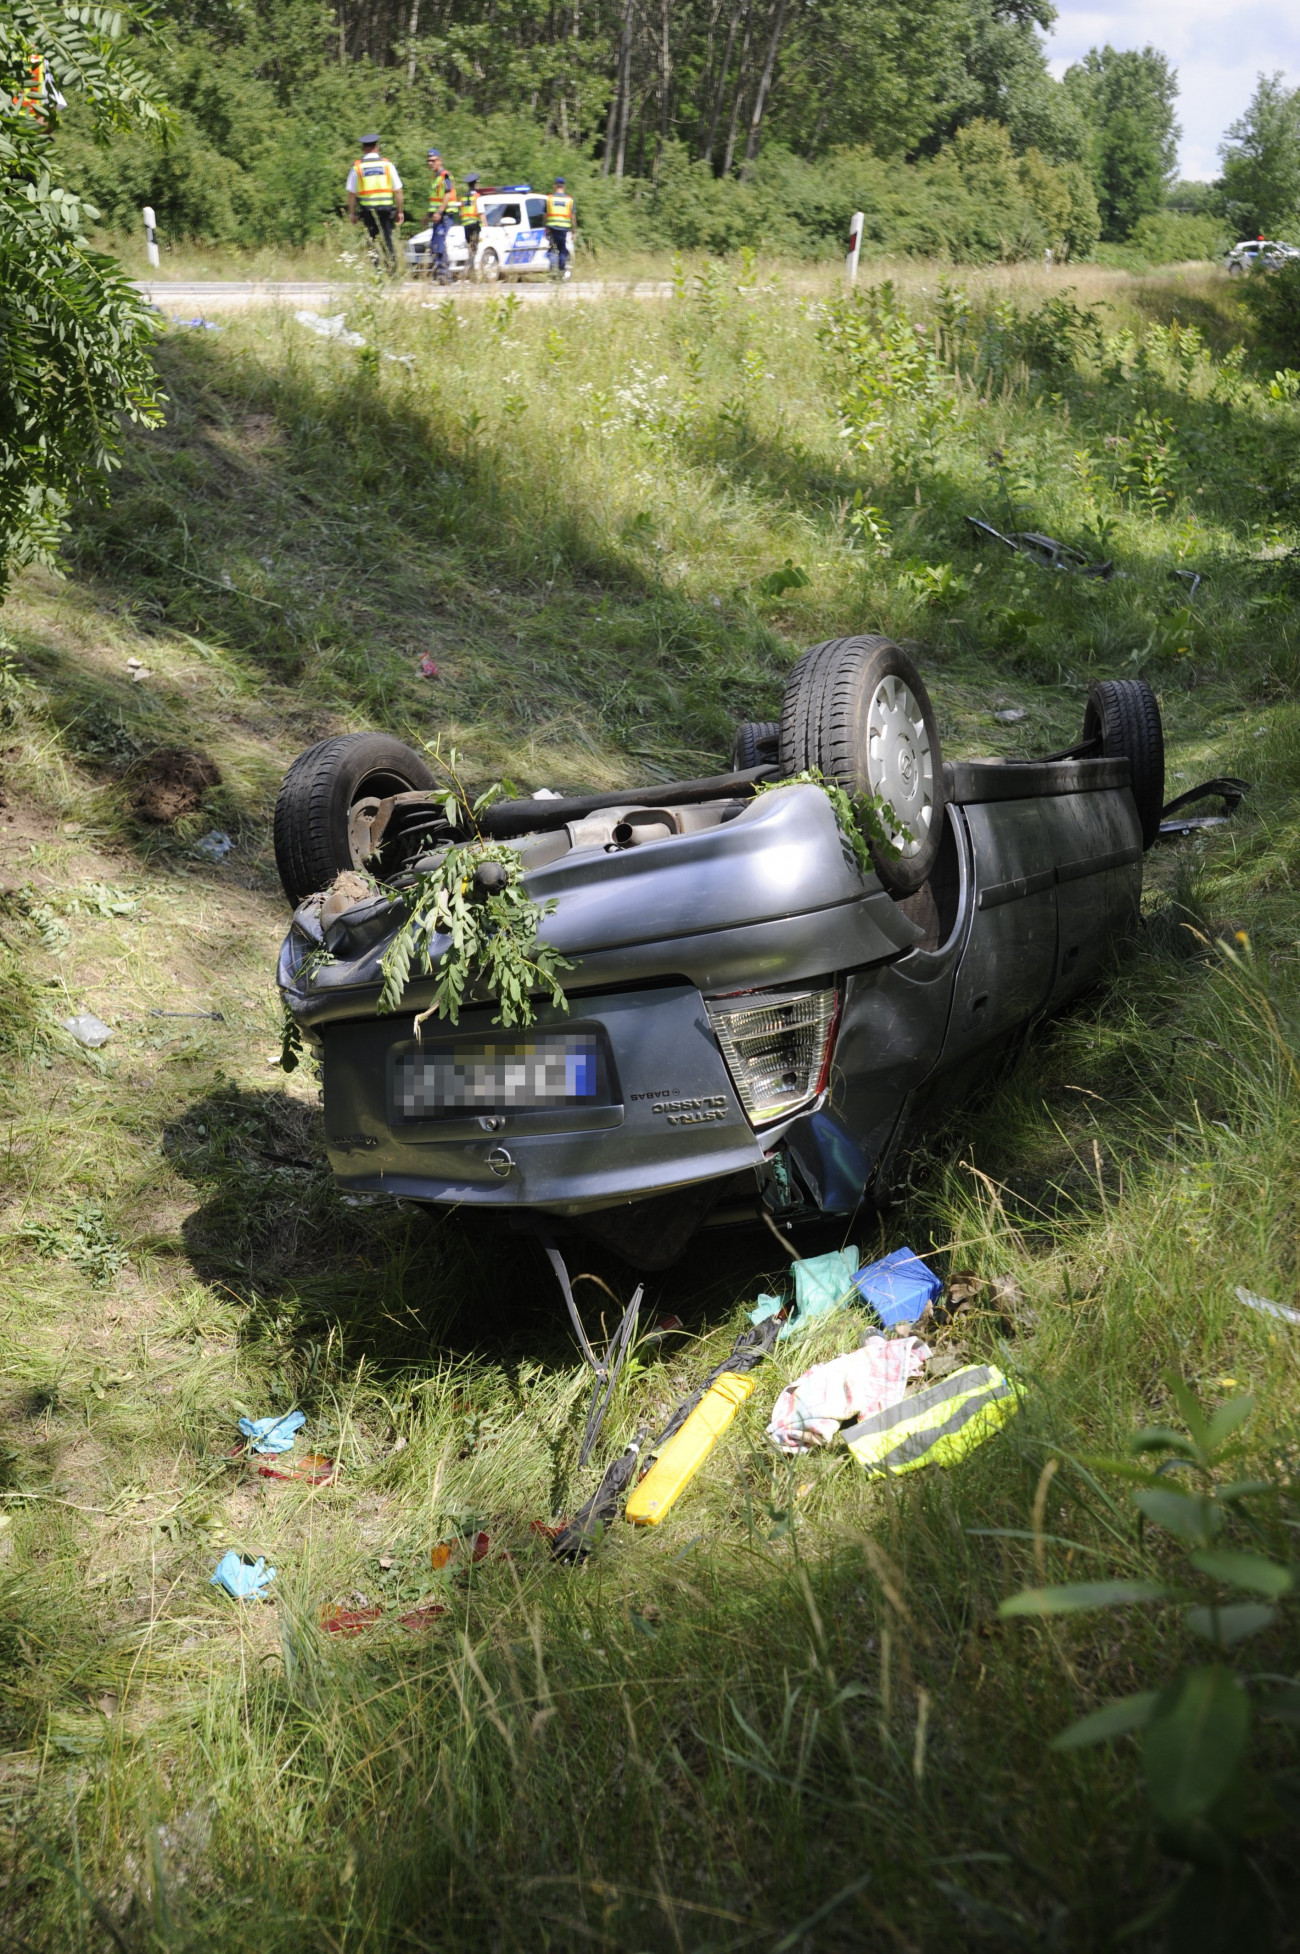 Újhartyán, 2018. június 19.
Felborult személyautó a 405-ös út mellett, Újhartyán közelében, ahol a gépjármű árokba hajtott 2018. június 19-én. A balesetben egy ember meghalt, ketten pedig súlyos, életveszélyes sérüléseket szenvedtek.
MTI Fotó: Mihádák Zoltán